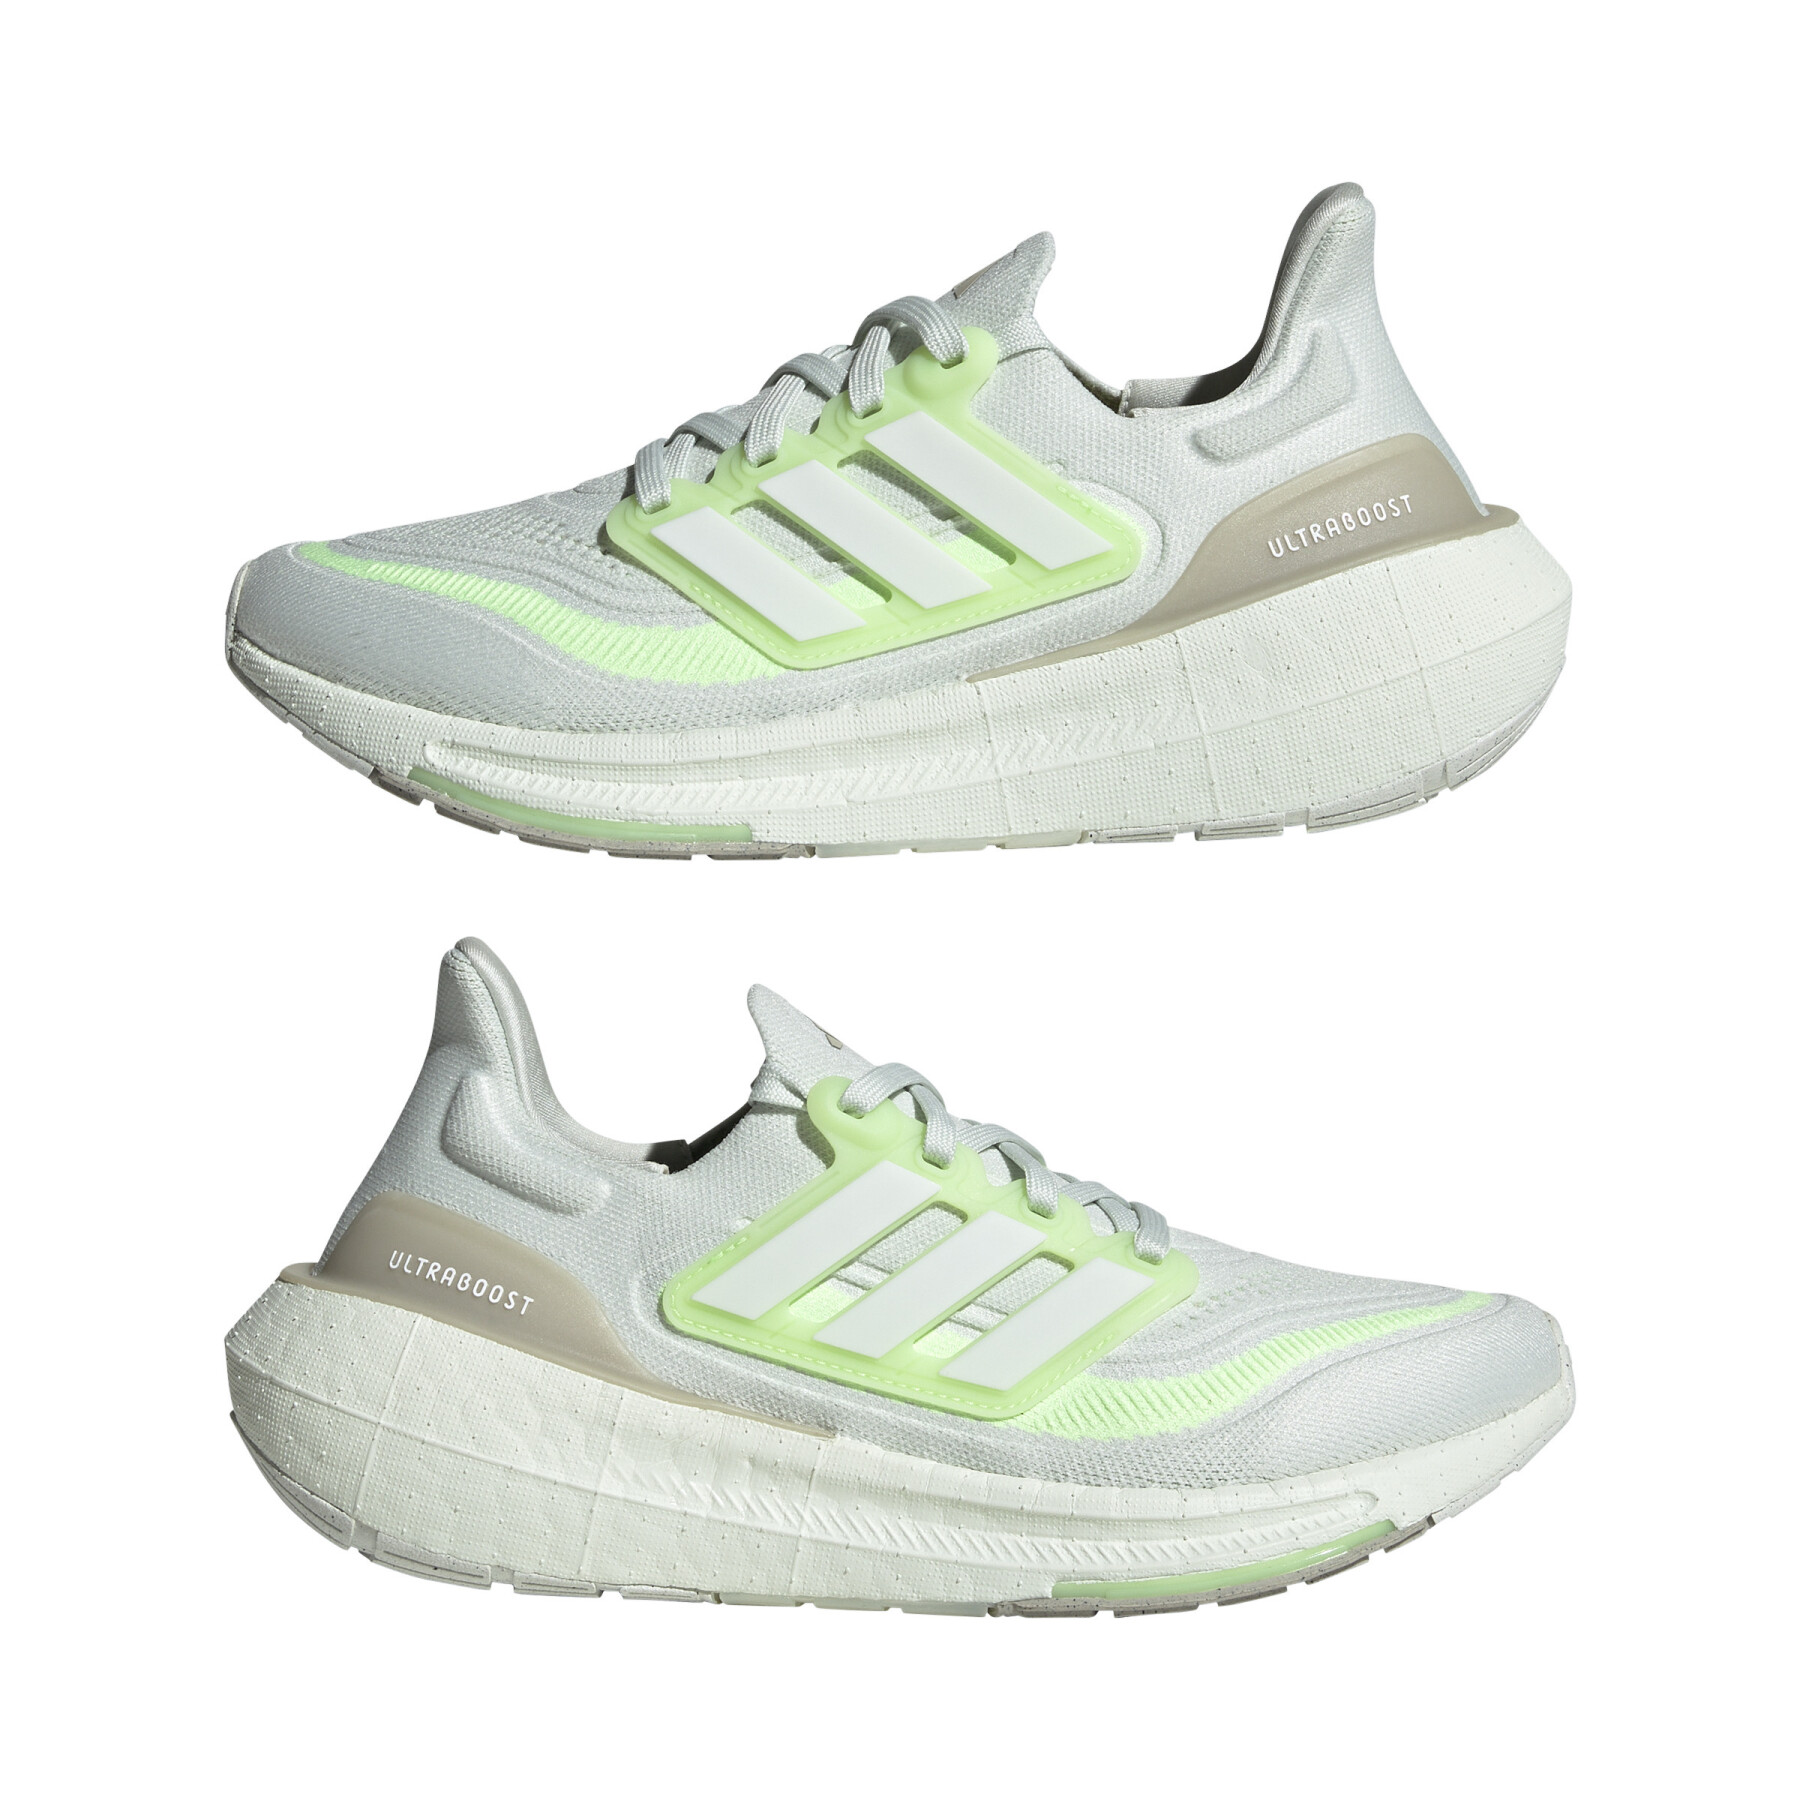 Chaussures de running homme Ultraboost Light adidas